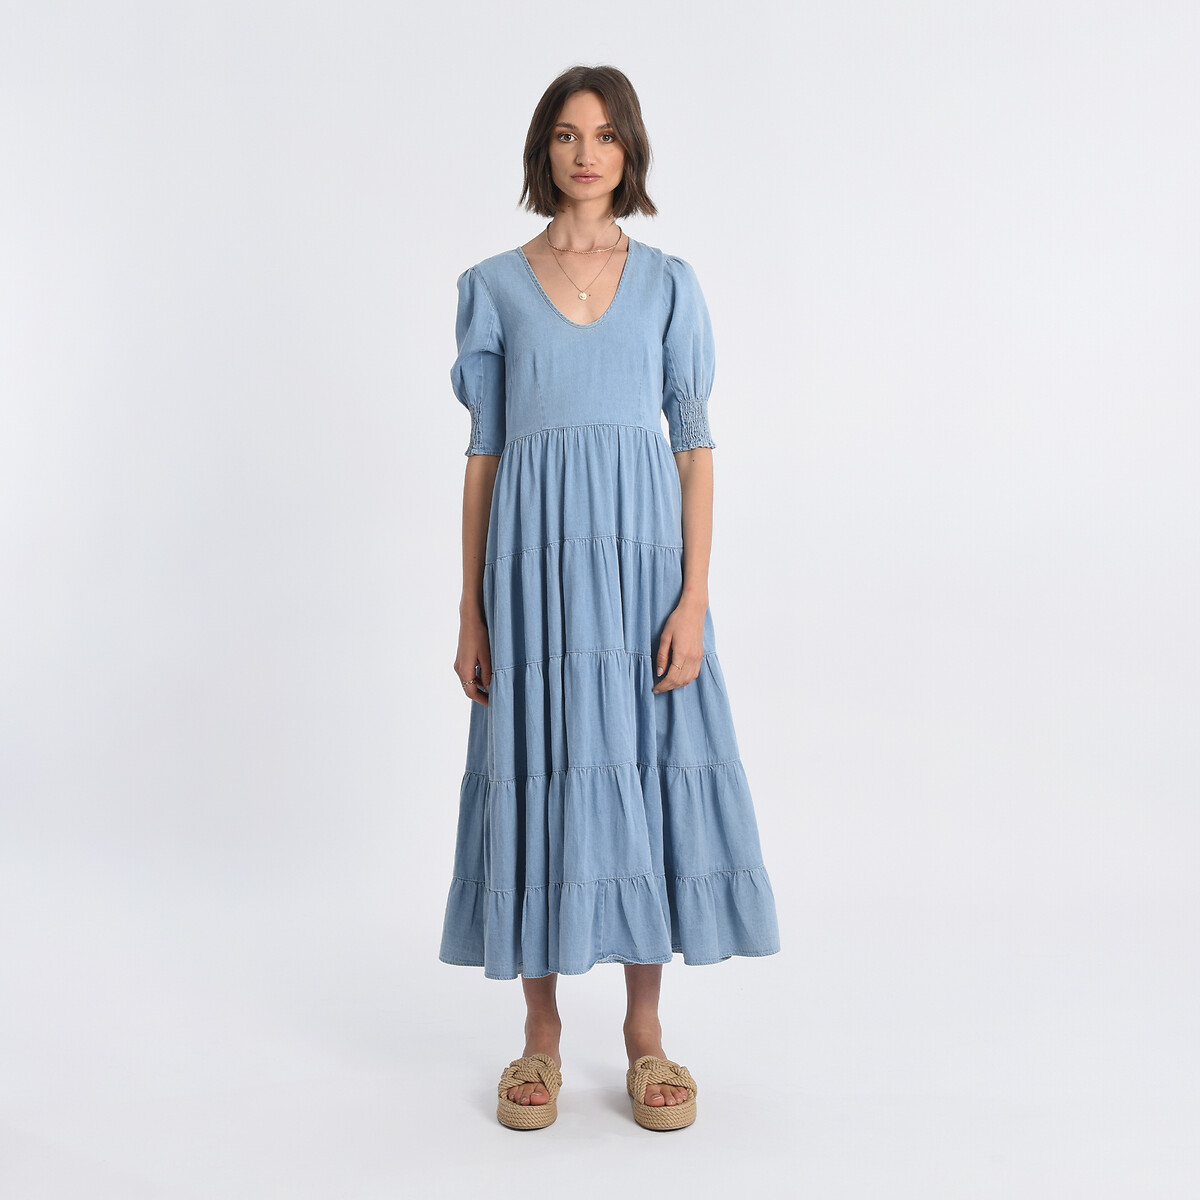 Платье длинное с воланами XL синий платье с принтом вырез с воланами xl синий